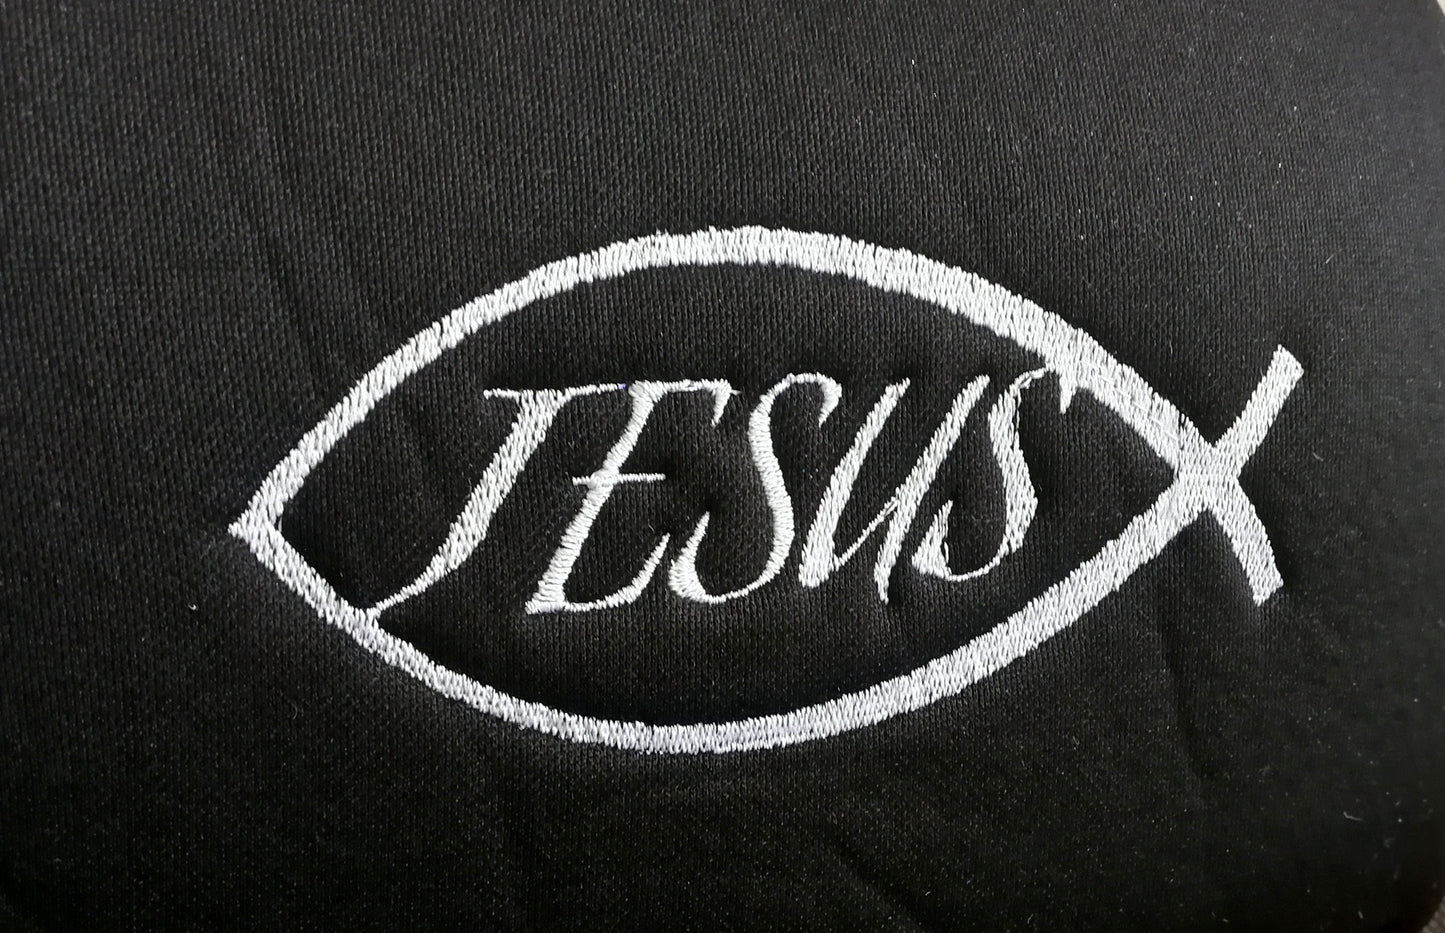 Embroidery Jesus Fish Design Auto Truck SUV Car Seat Headrest Cover Accessory 1 Piece - Yupbizauto